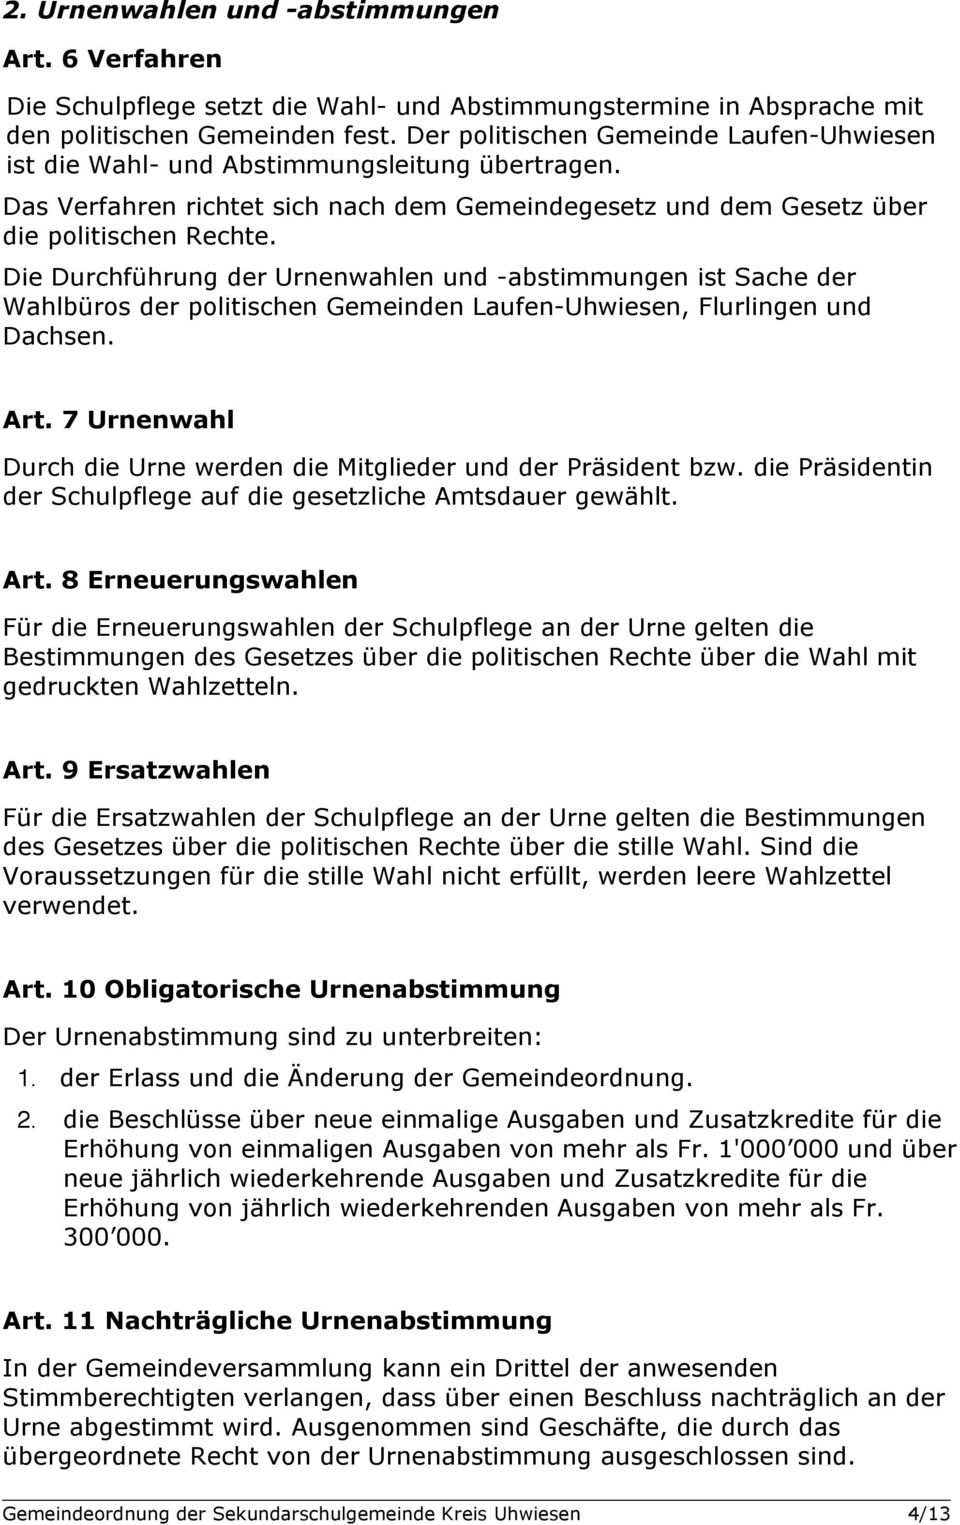 Die Durchführung der Urnenwahlen und -abstimmungen ist Sache der Wahlbüros der politischen Gemeinden Laufen-Uhwiesen, Flurlingen und Dachsen. Art.